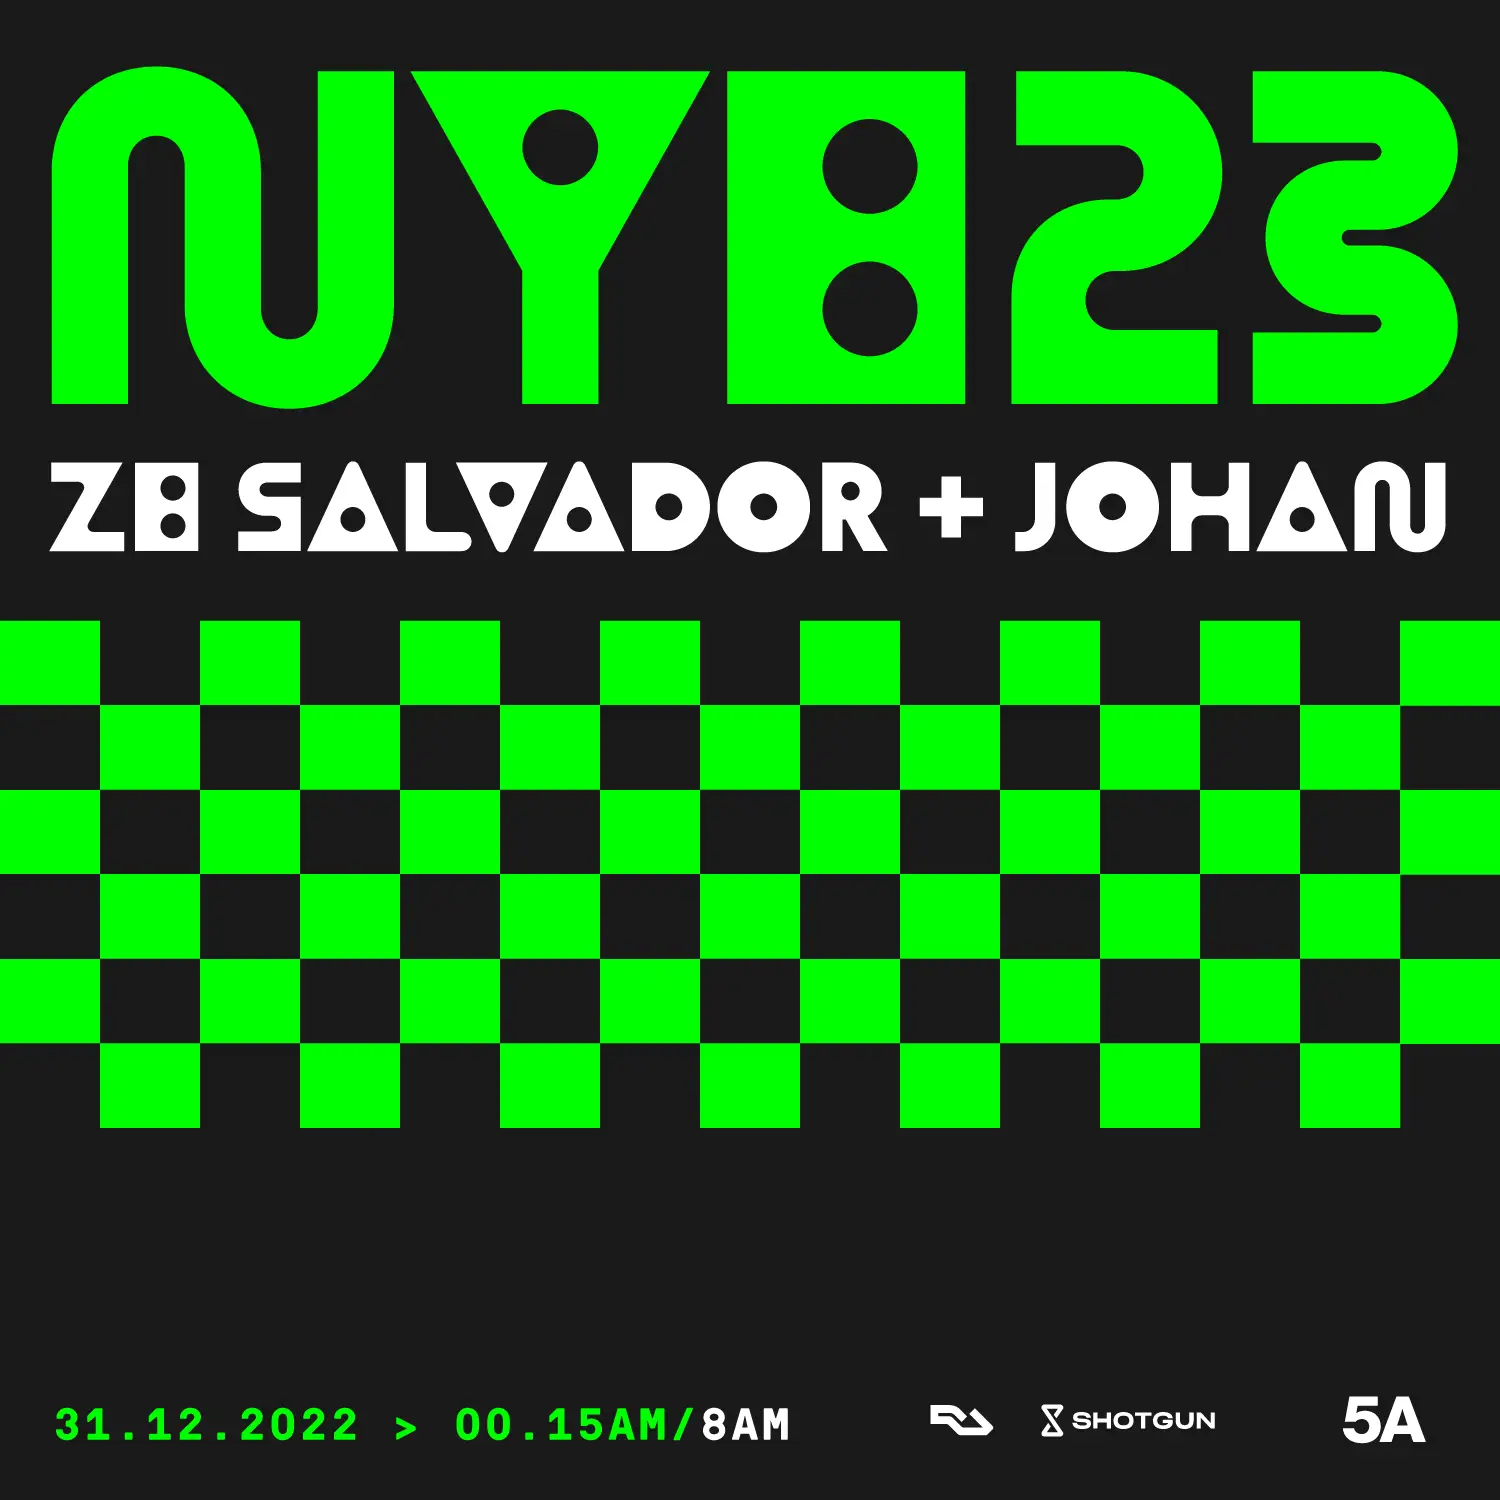 NYE 23 - Ze Salvador + JOHAN